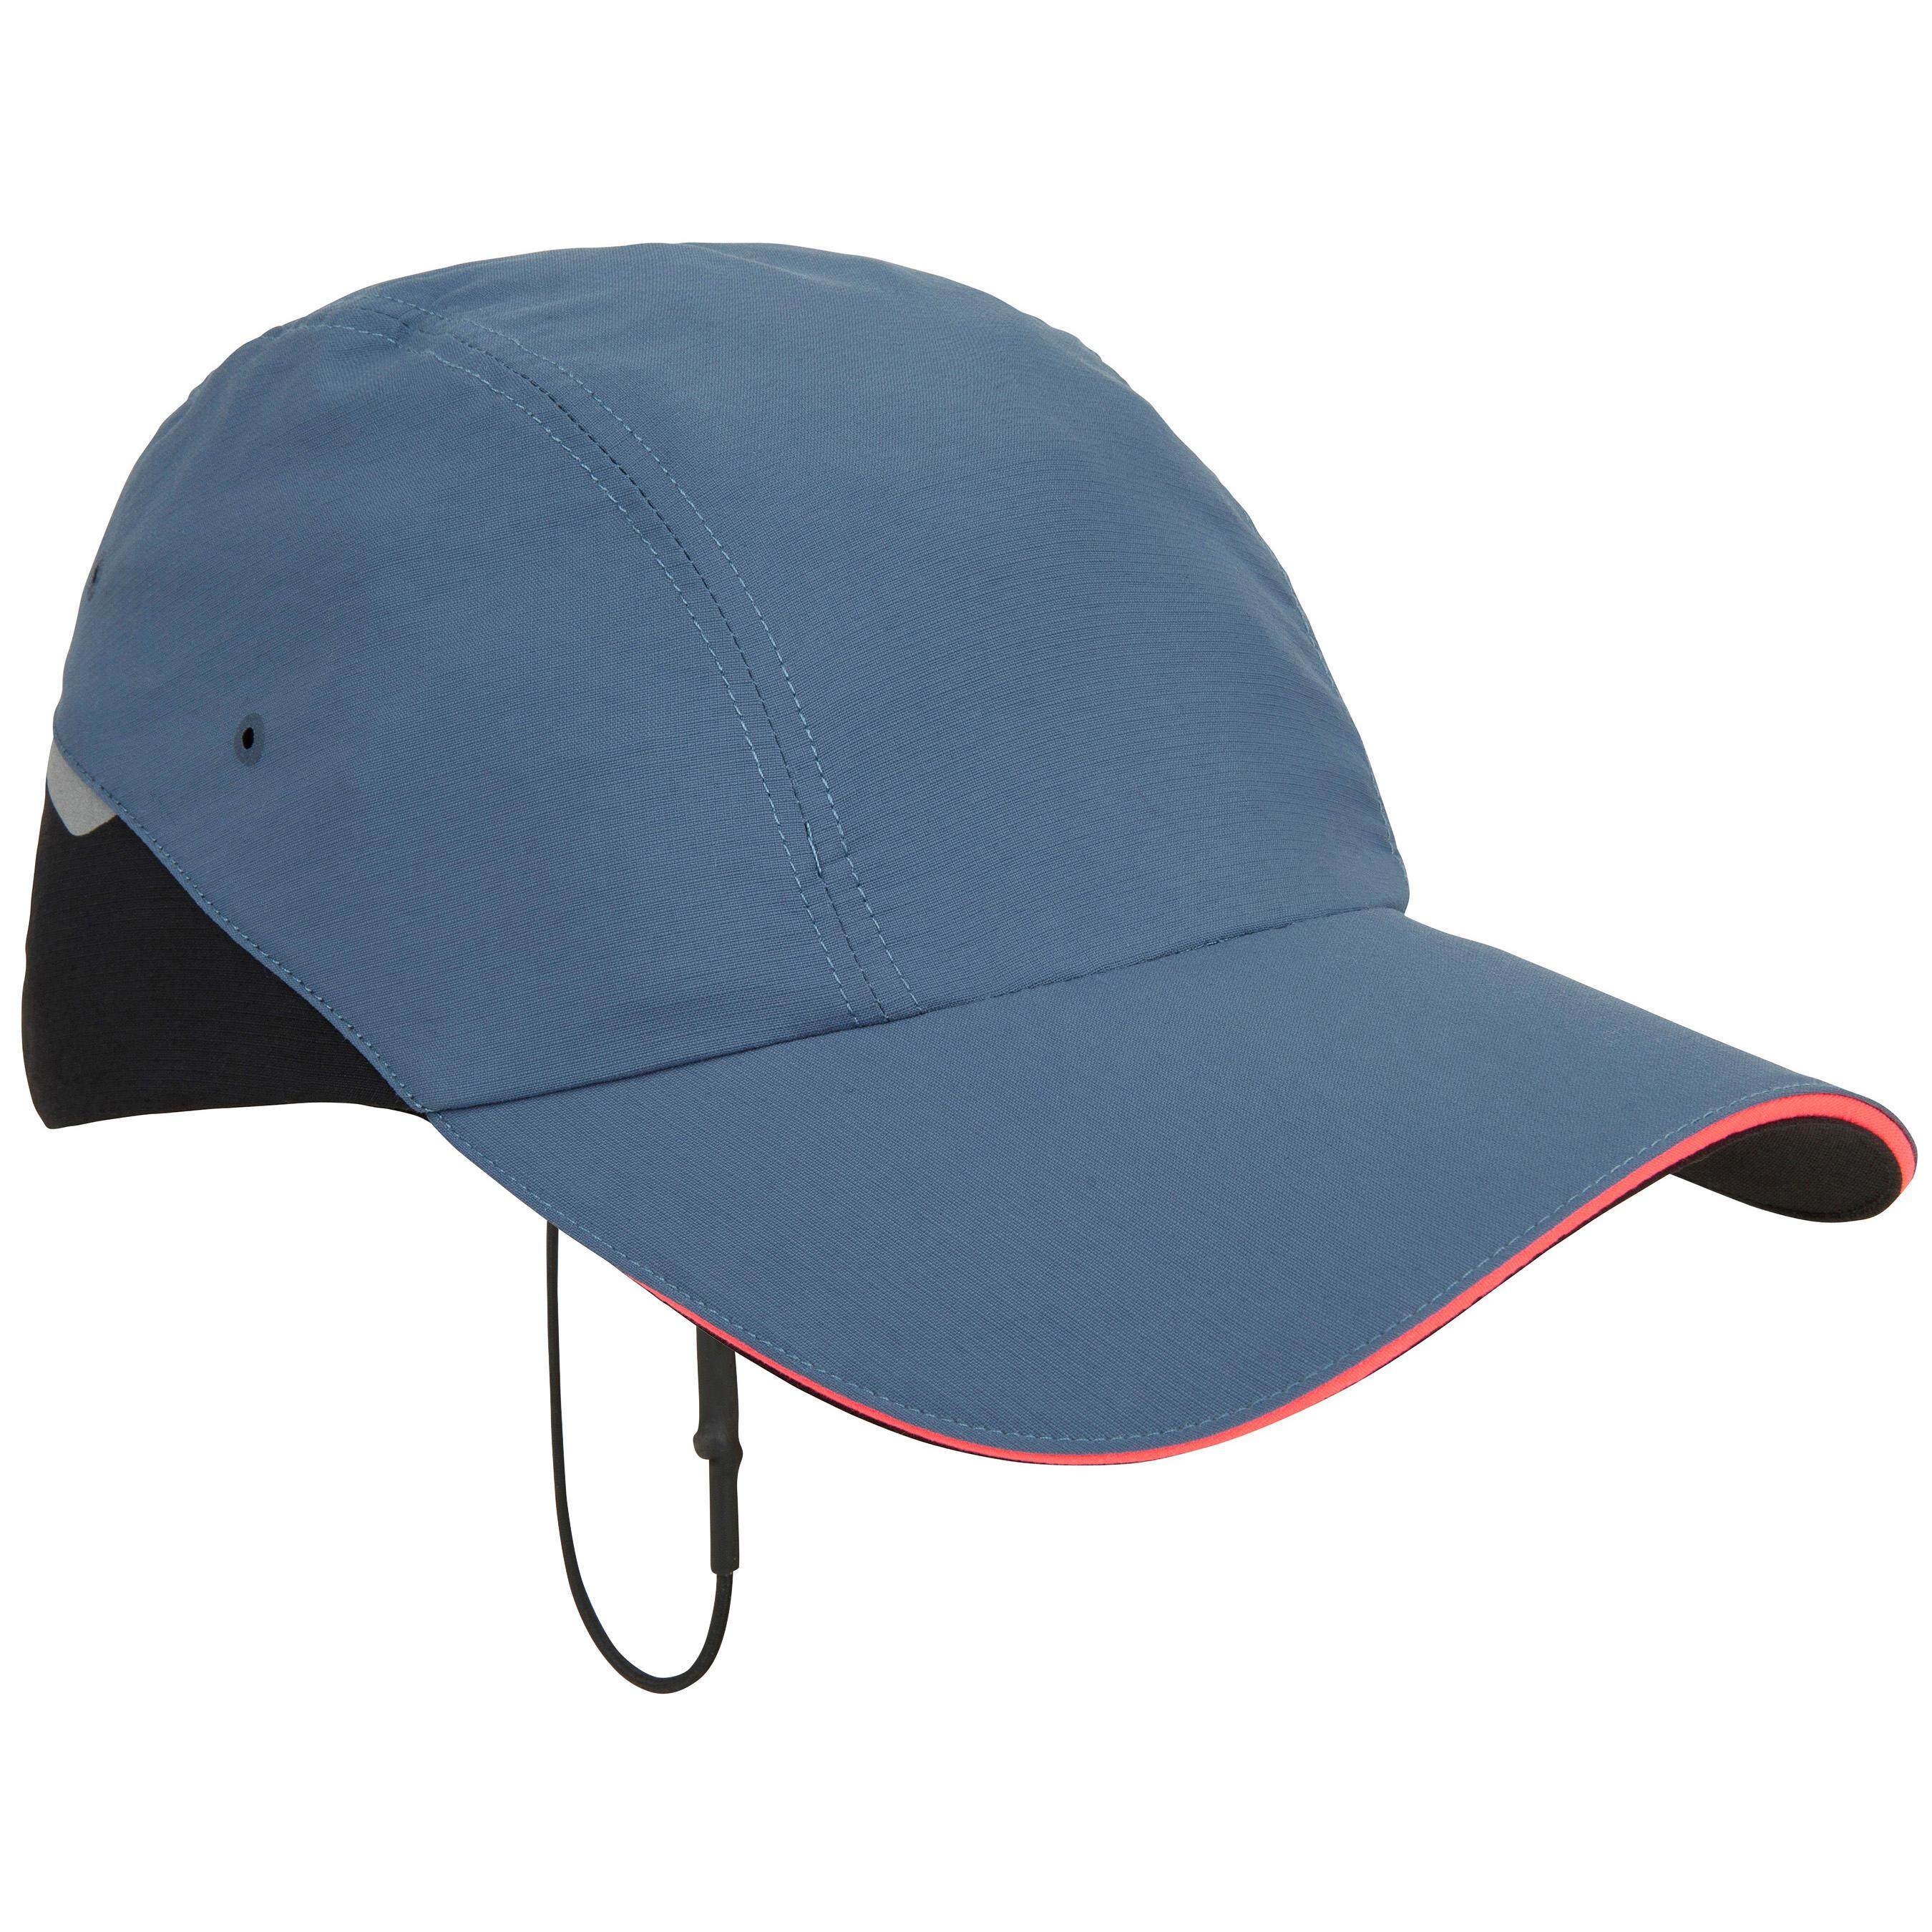 [ด่วน!! โปรโมชั่นมีจำนวนจำกัด]หมวกสำหรับใส่ล่องเรือรุ่น RACE 500 (สีน้ำเงินเทา)